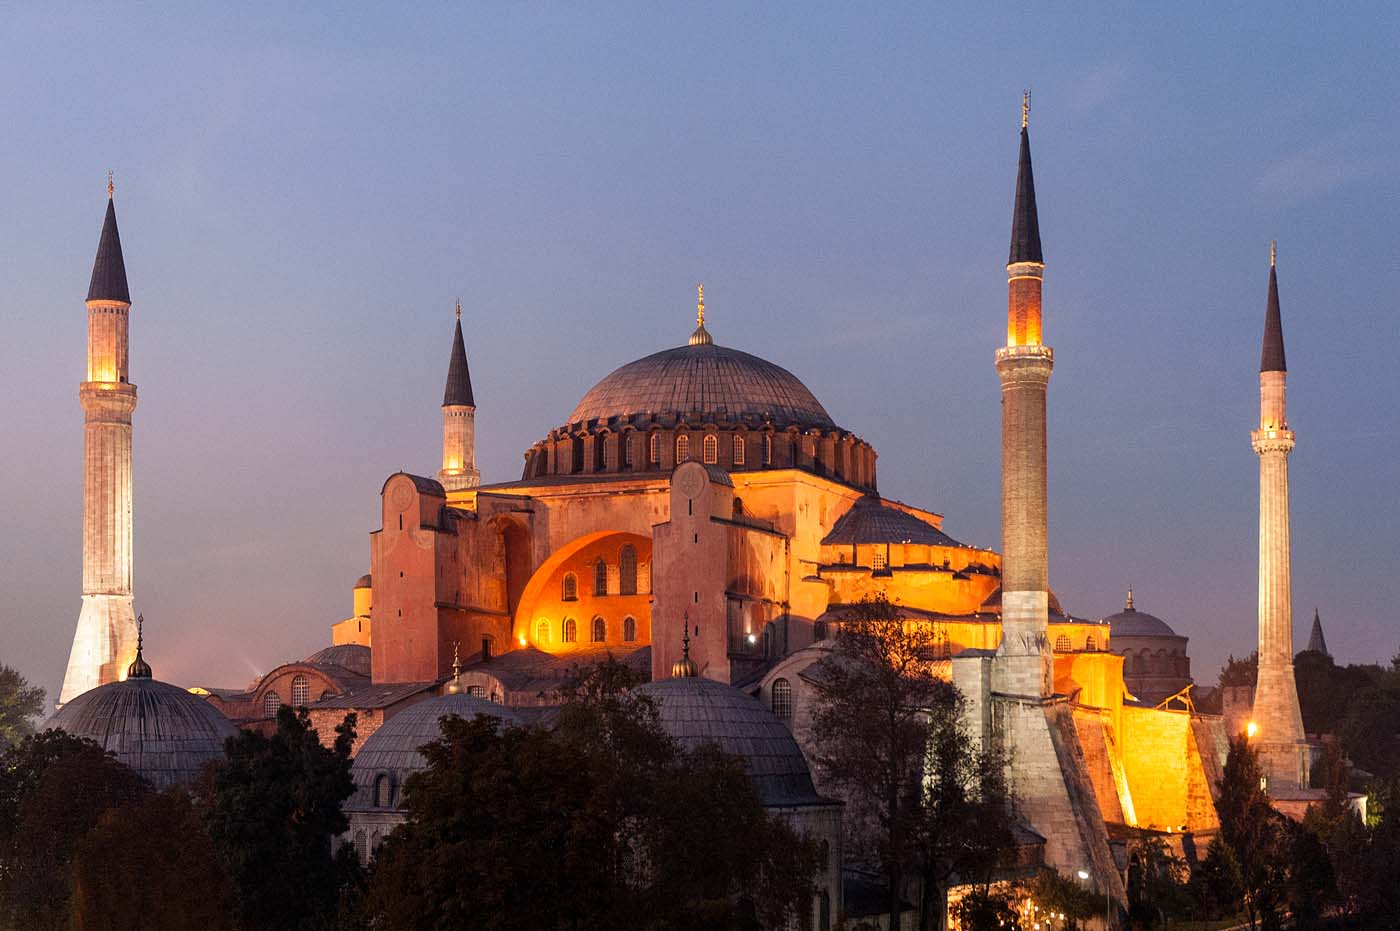 Ο Ερντογάν σκέφτεται (πάλι) να μετατρέψει το μουσείο της Αγίας Σοφίας σε τζαμί